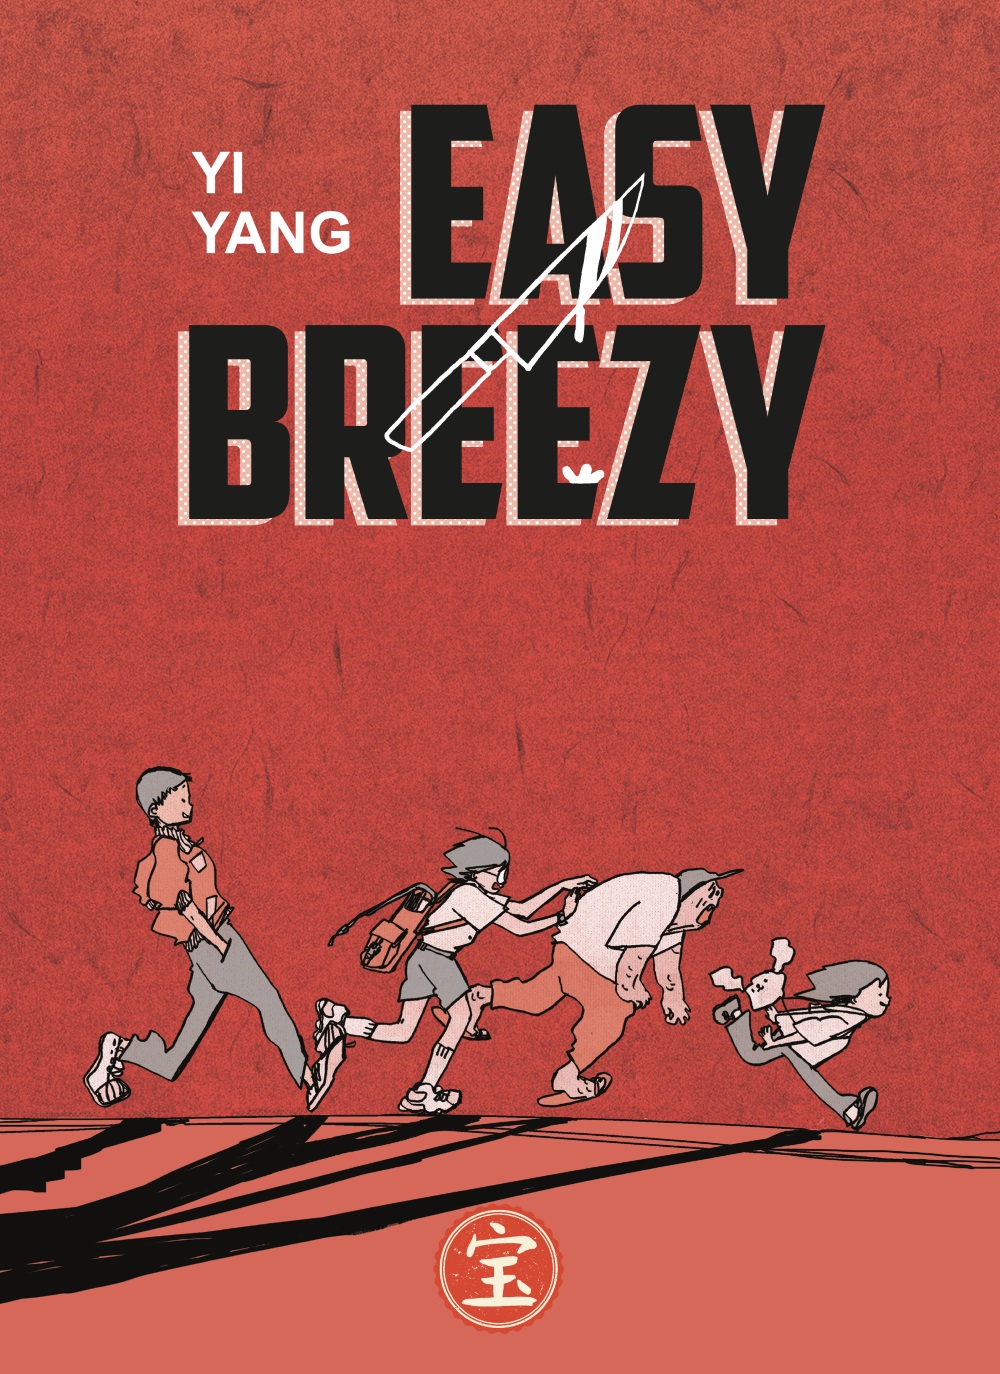 Easy Breezy Yi Yang Bao Publishing